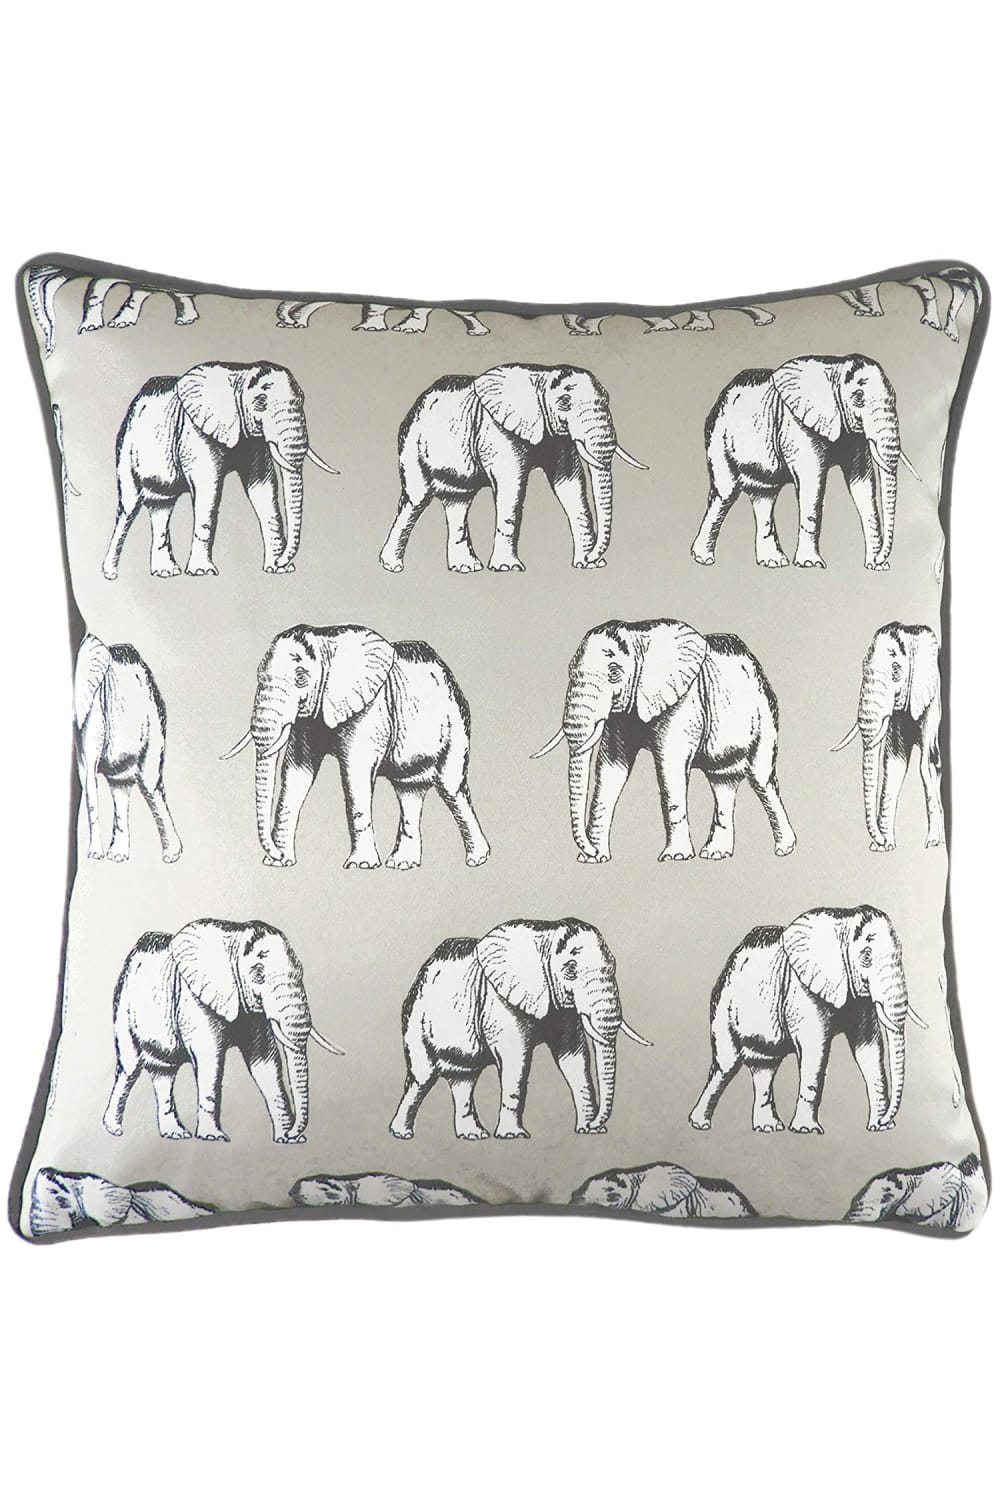 Evans Lichfield Safari Elephant Monochrome Throw Pillow Cover (White/Gray/Black) (One Size)